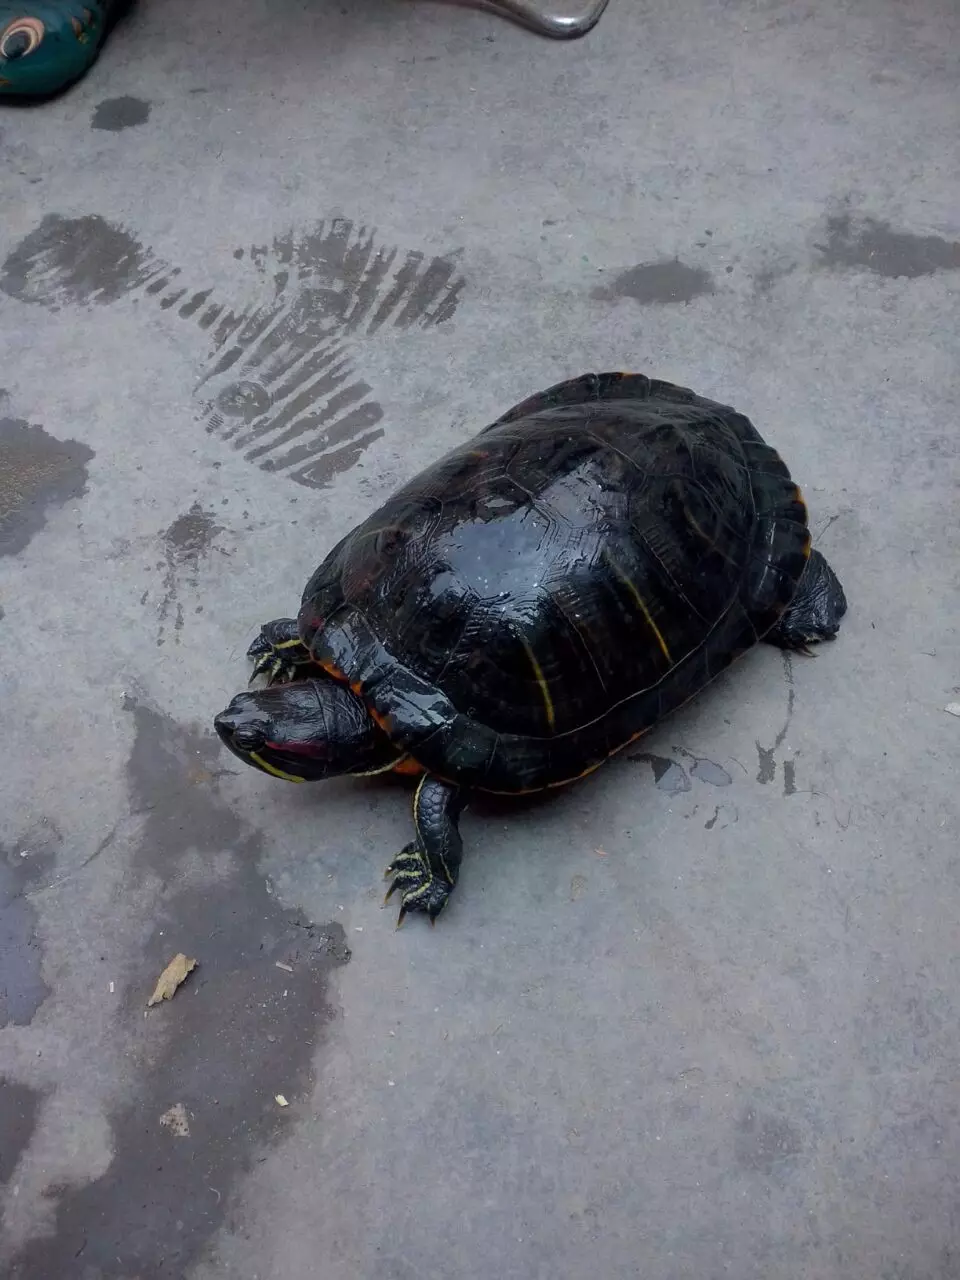 5、2斤以上中华草龟多少钱一只:一般二斤重以上的中华草龟能卖多少钱一斤